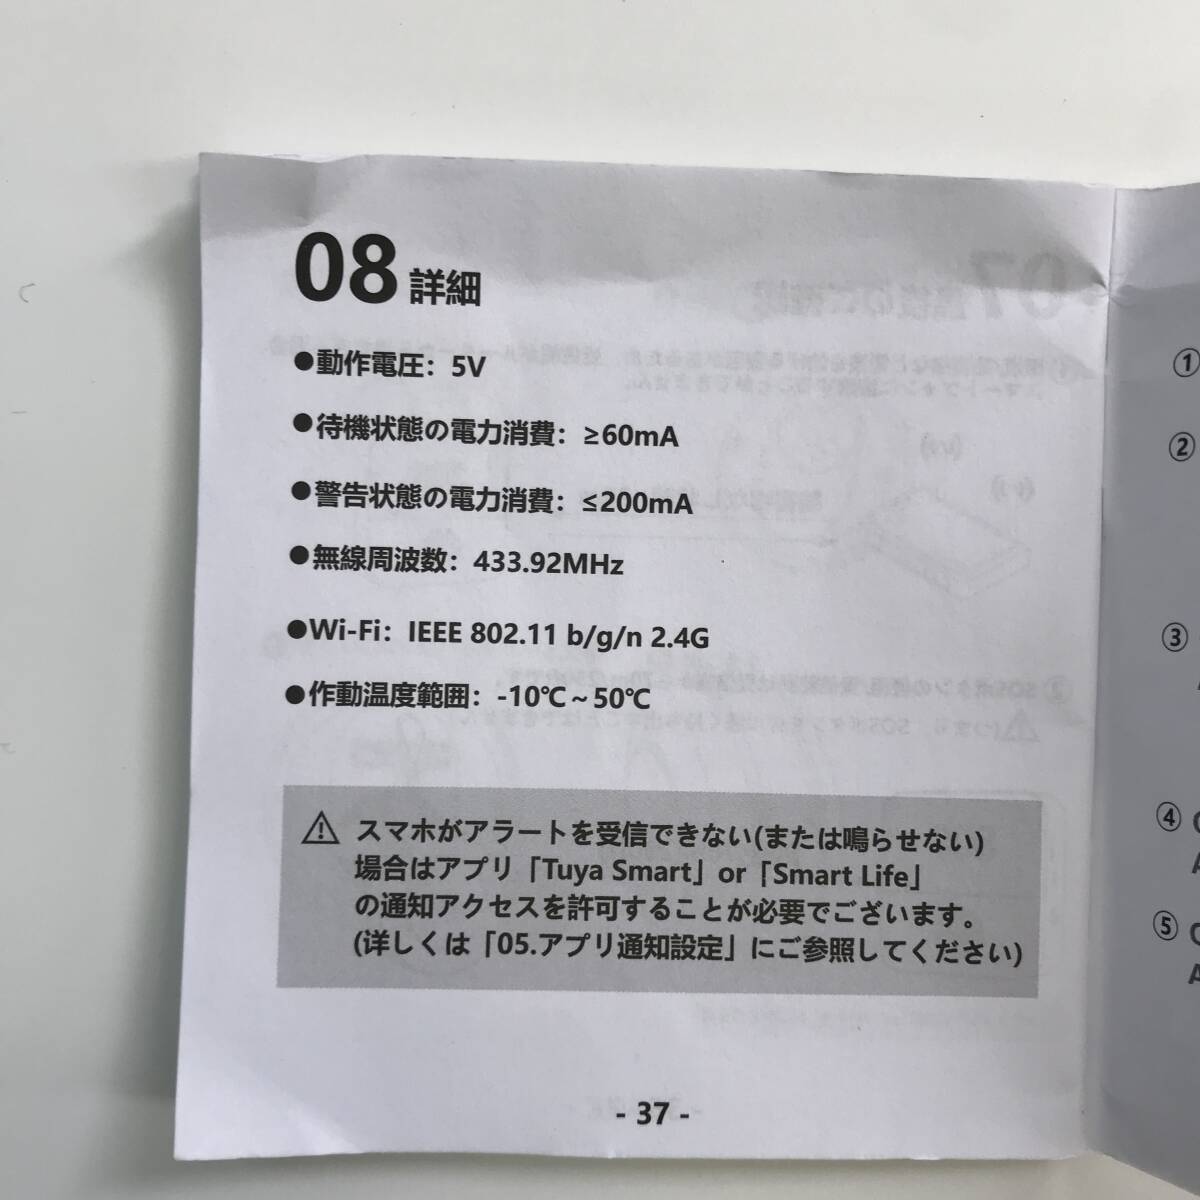 [1 иен аукцион ].... bell уход медсестра call для бытового использования дверной звонок беспроводной строительные работы не необходимо водонепроницаемый громкость настройка уход для TS01B001447